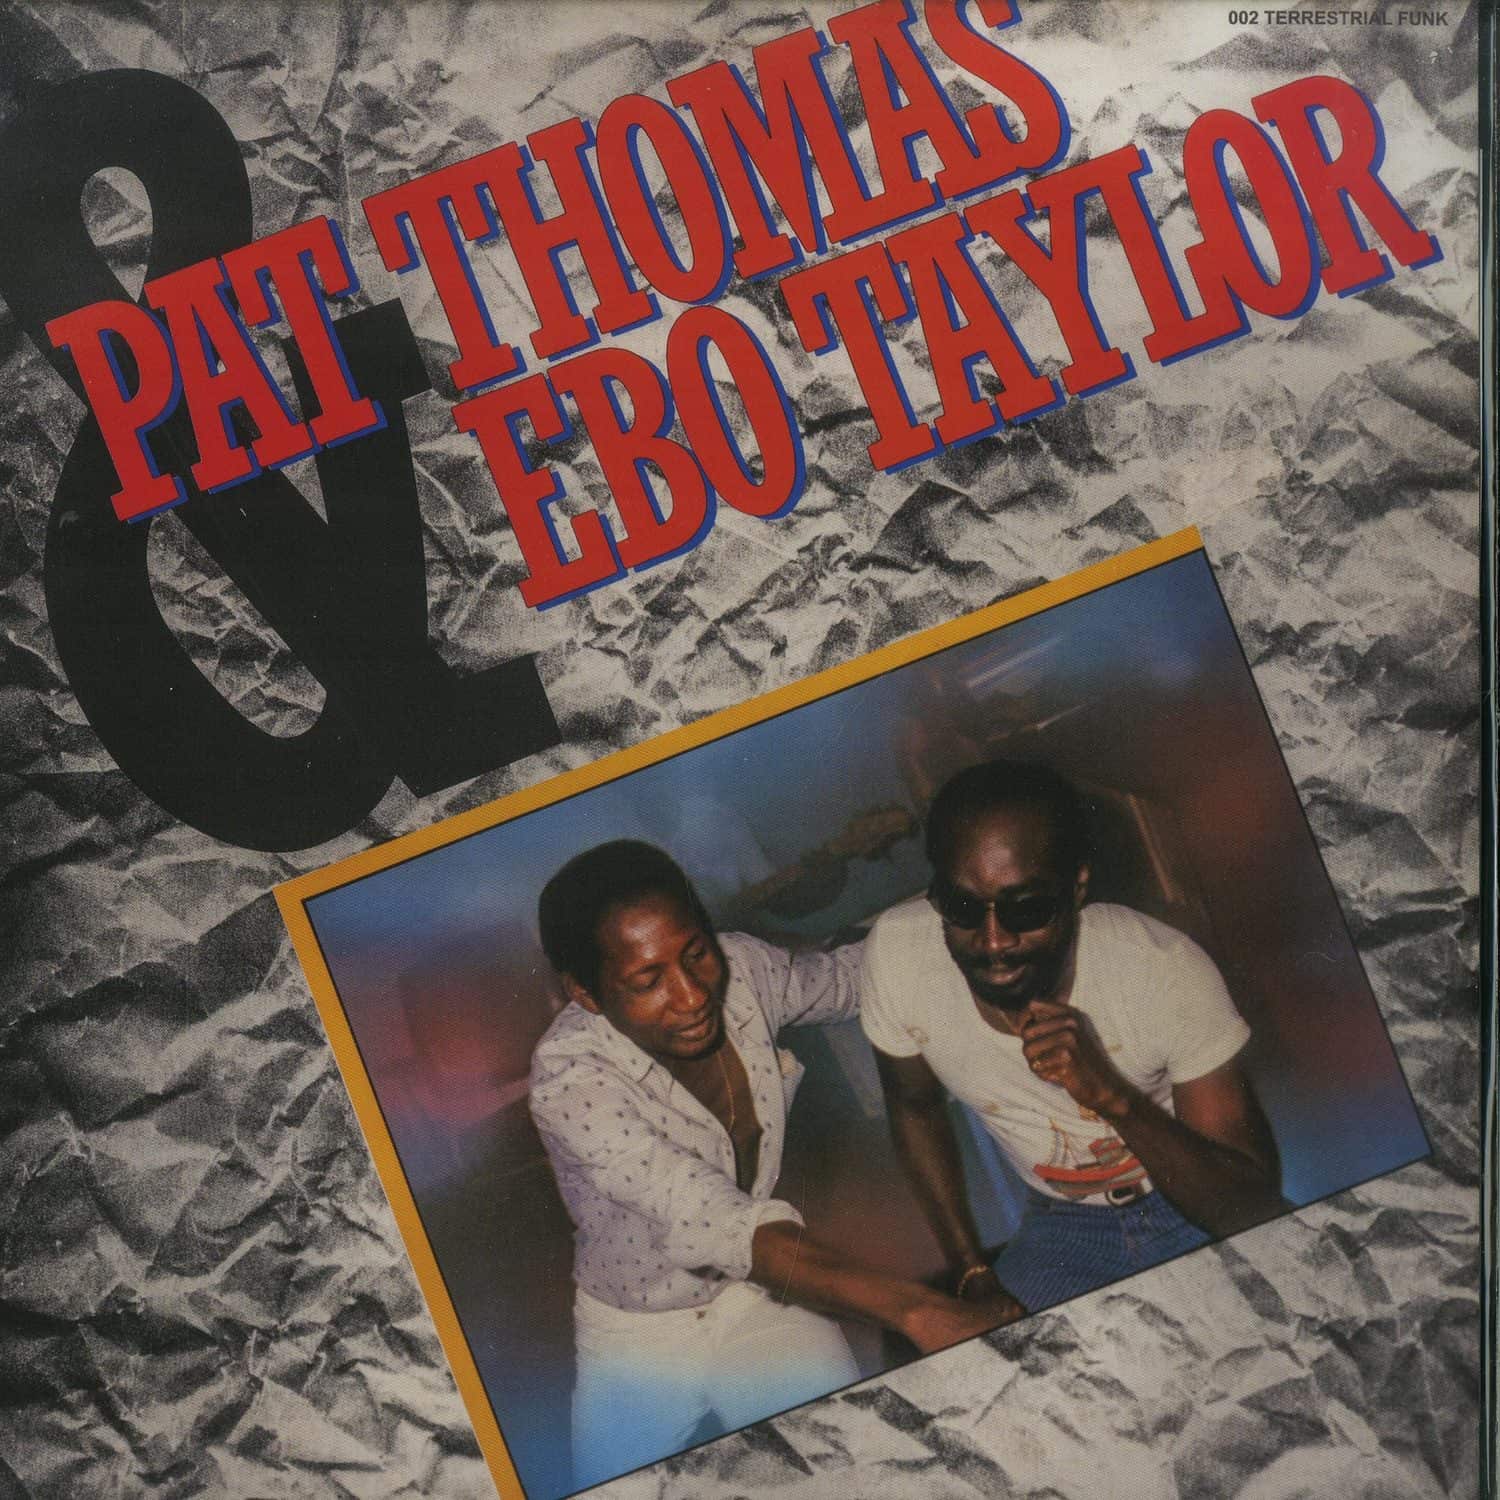 Pat Thomas and Ebo Taylor - PAT THOMAS AND EBO TAYLOR